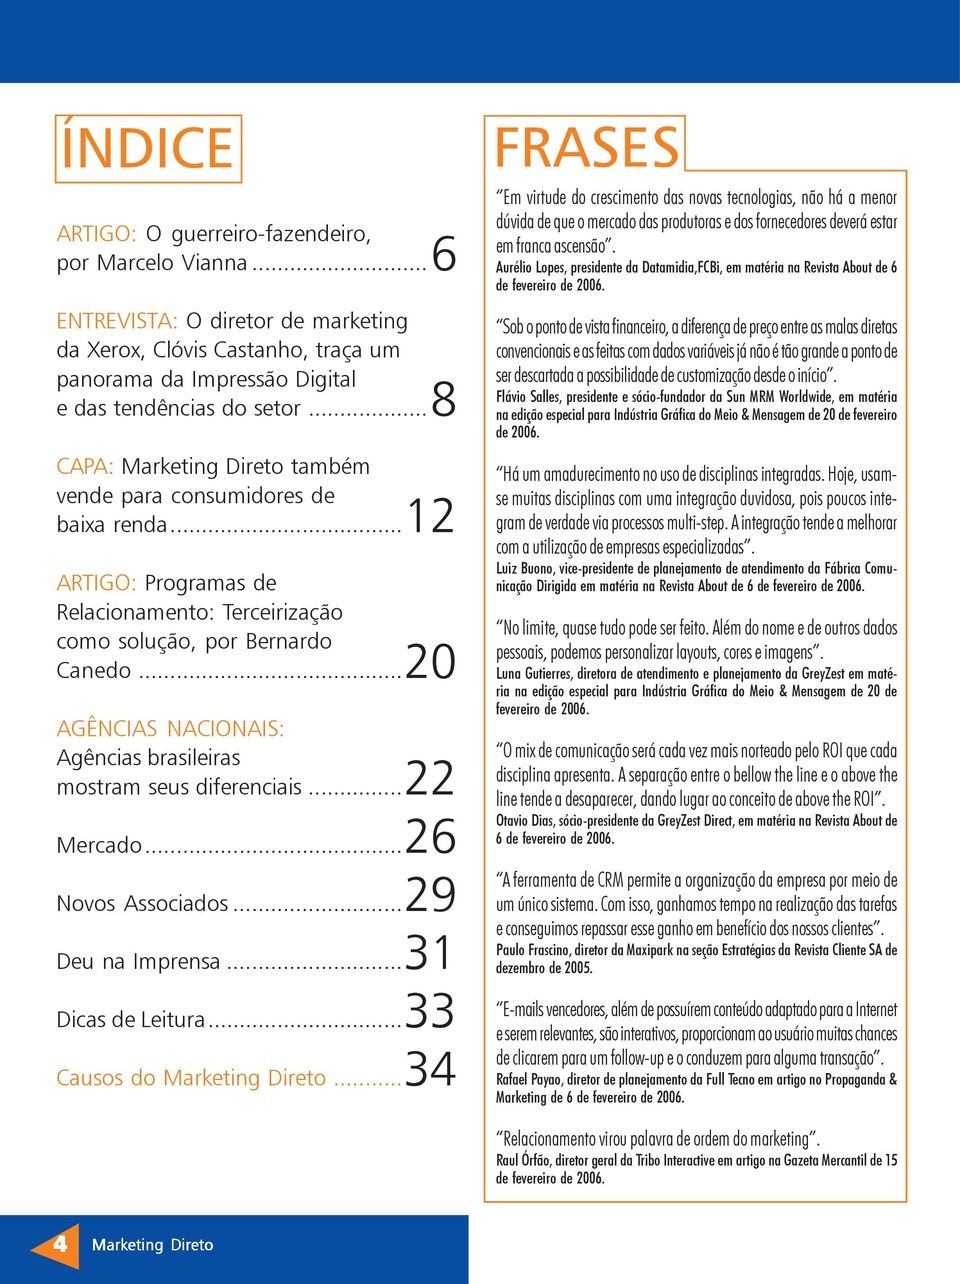 ..20 AGÊNCIAS NACIONAIS: Agências brasileiras mostram seus diferenciais...22 Mercado...26 Novos Associados...29 Deu na Imprensa...31 Dicas de Leitura...33 Causos do Marketing Direto.